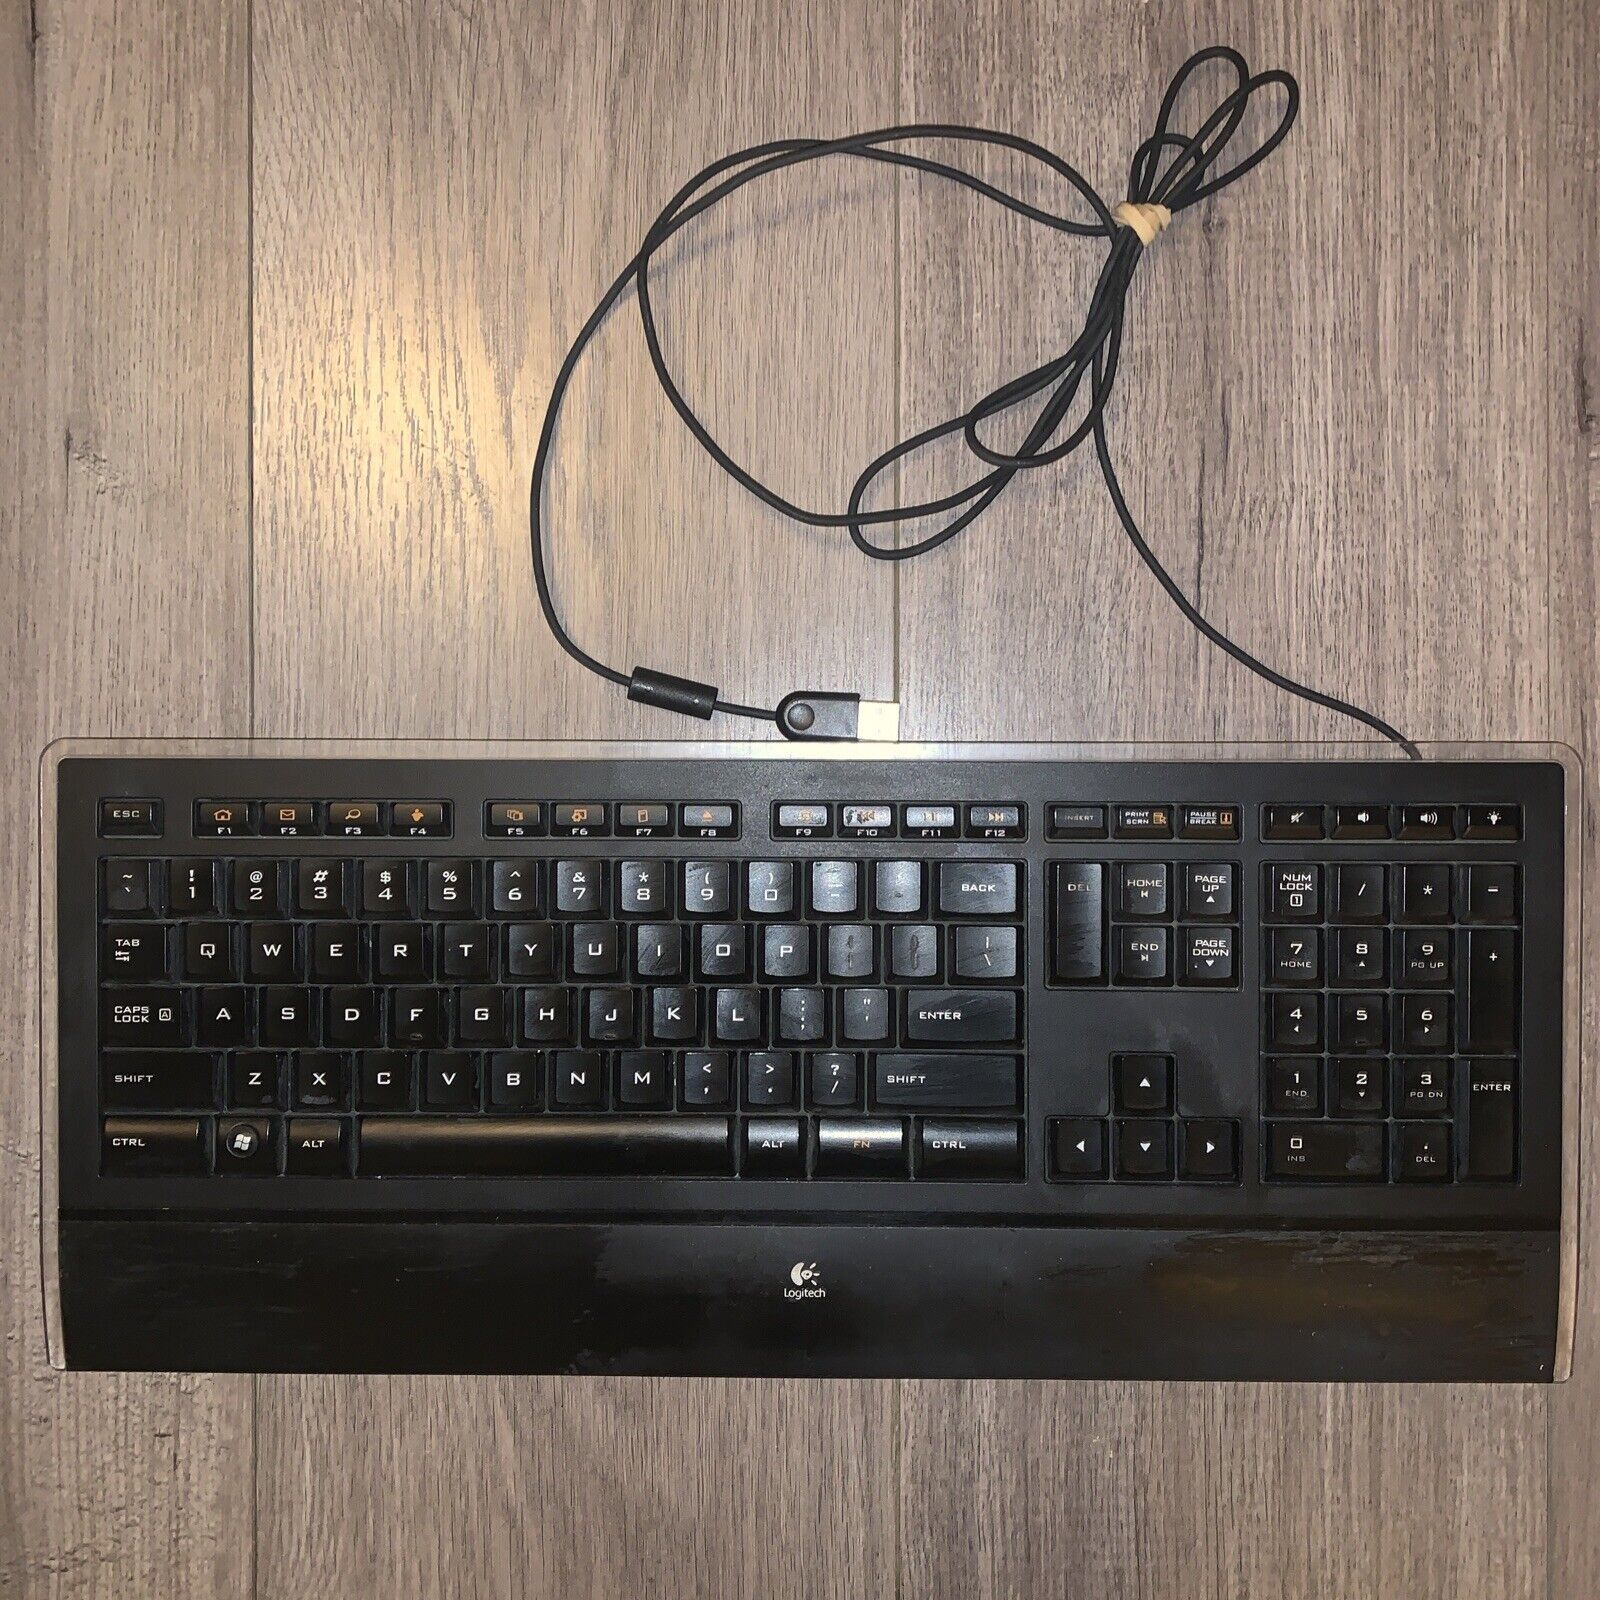 LOGITECH K740 Illuminated USB Keyboard Y-UY95 Tested Works NICE